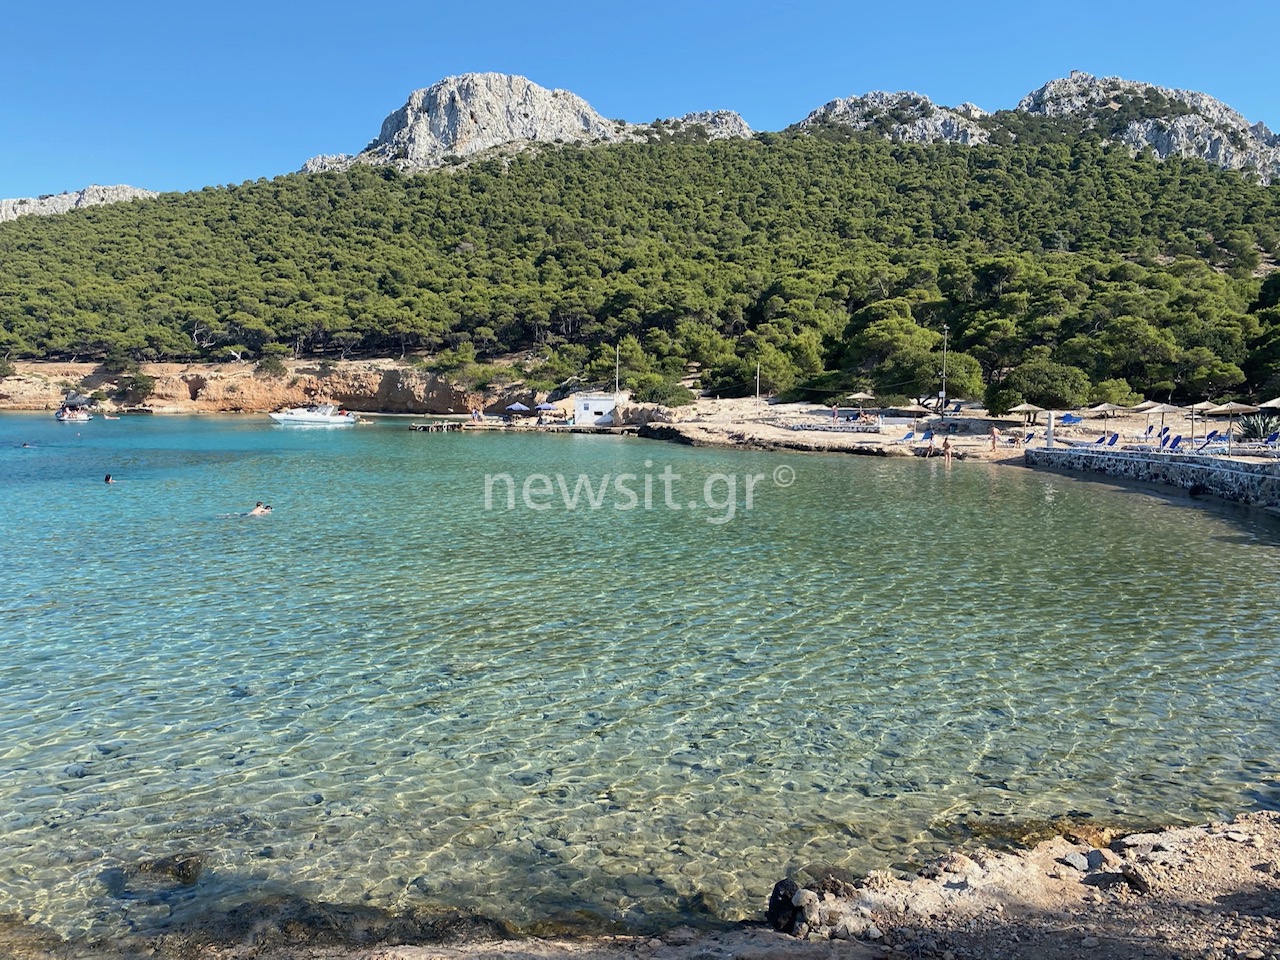 Μονή: Το μικροσκοπικό νησί με τα κρυστάλλινα νερά μόλις 1 ώρα από την Αθήνα